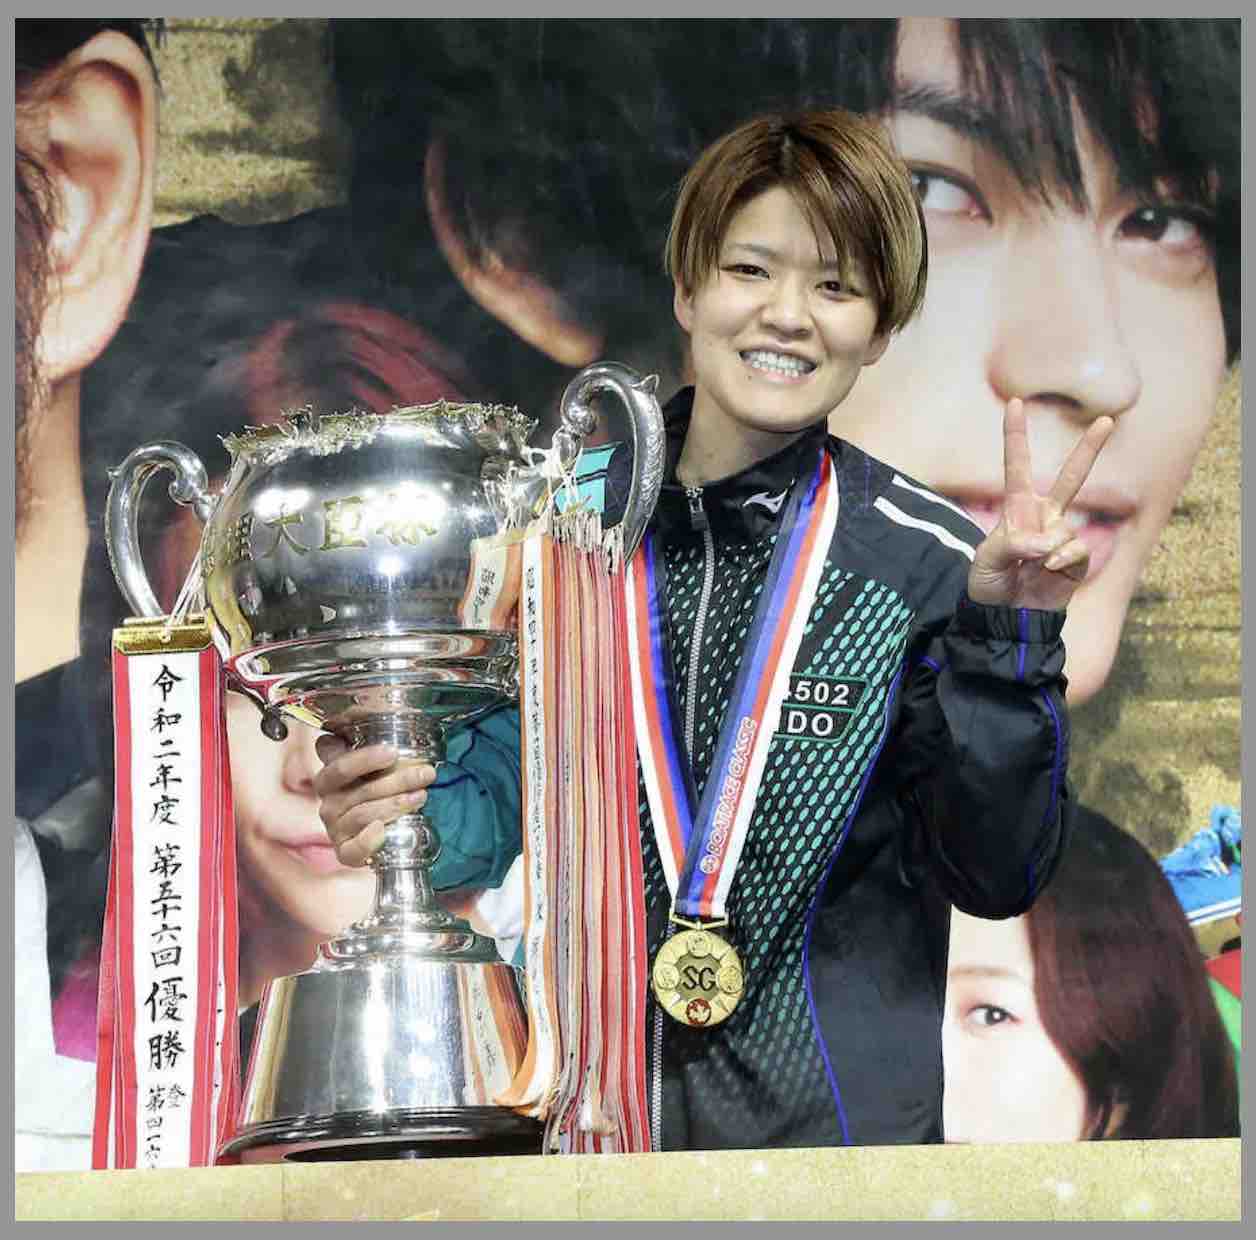 女子選手として初めてSG優勝を成し遂げた遠藤エミ